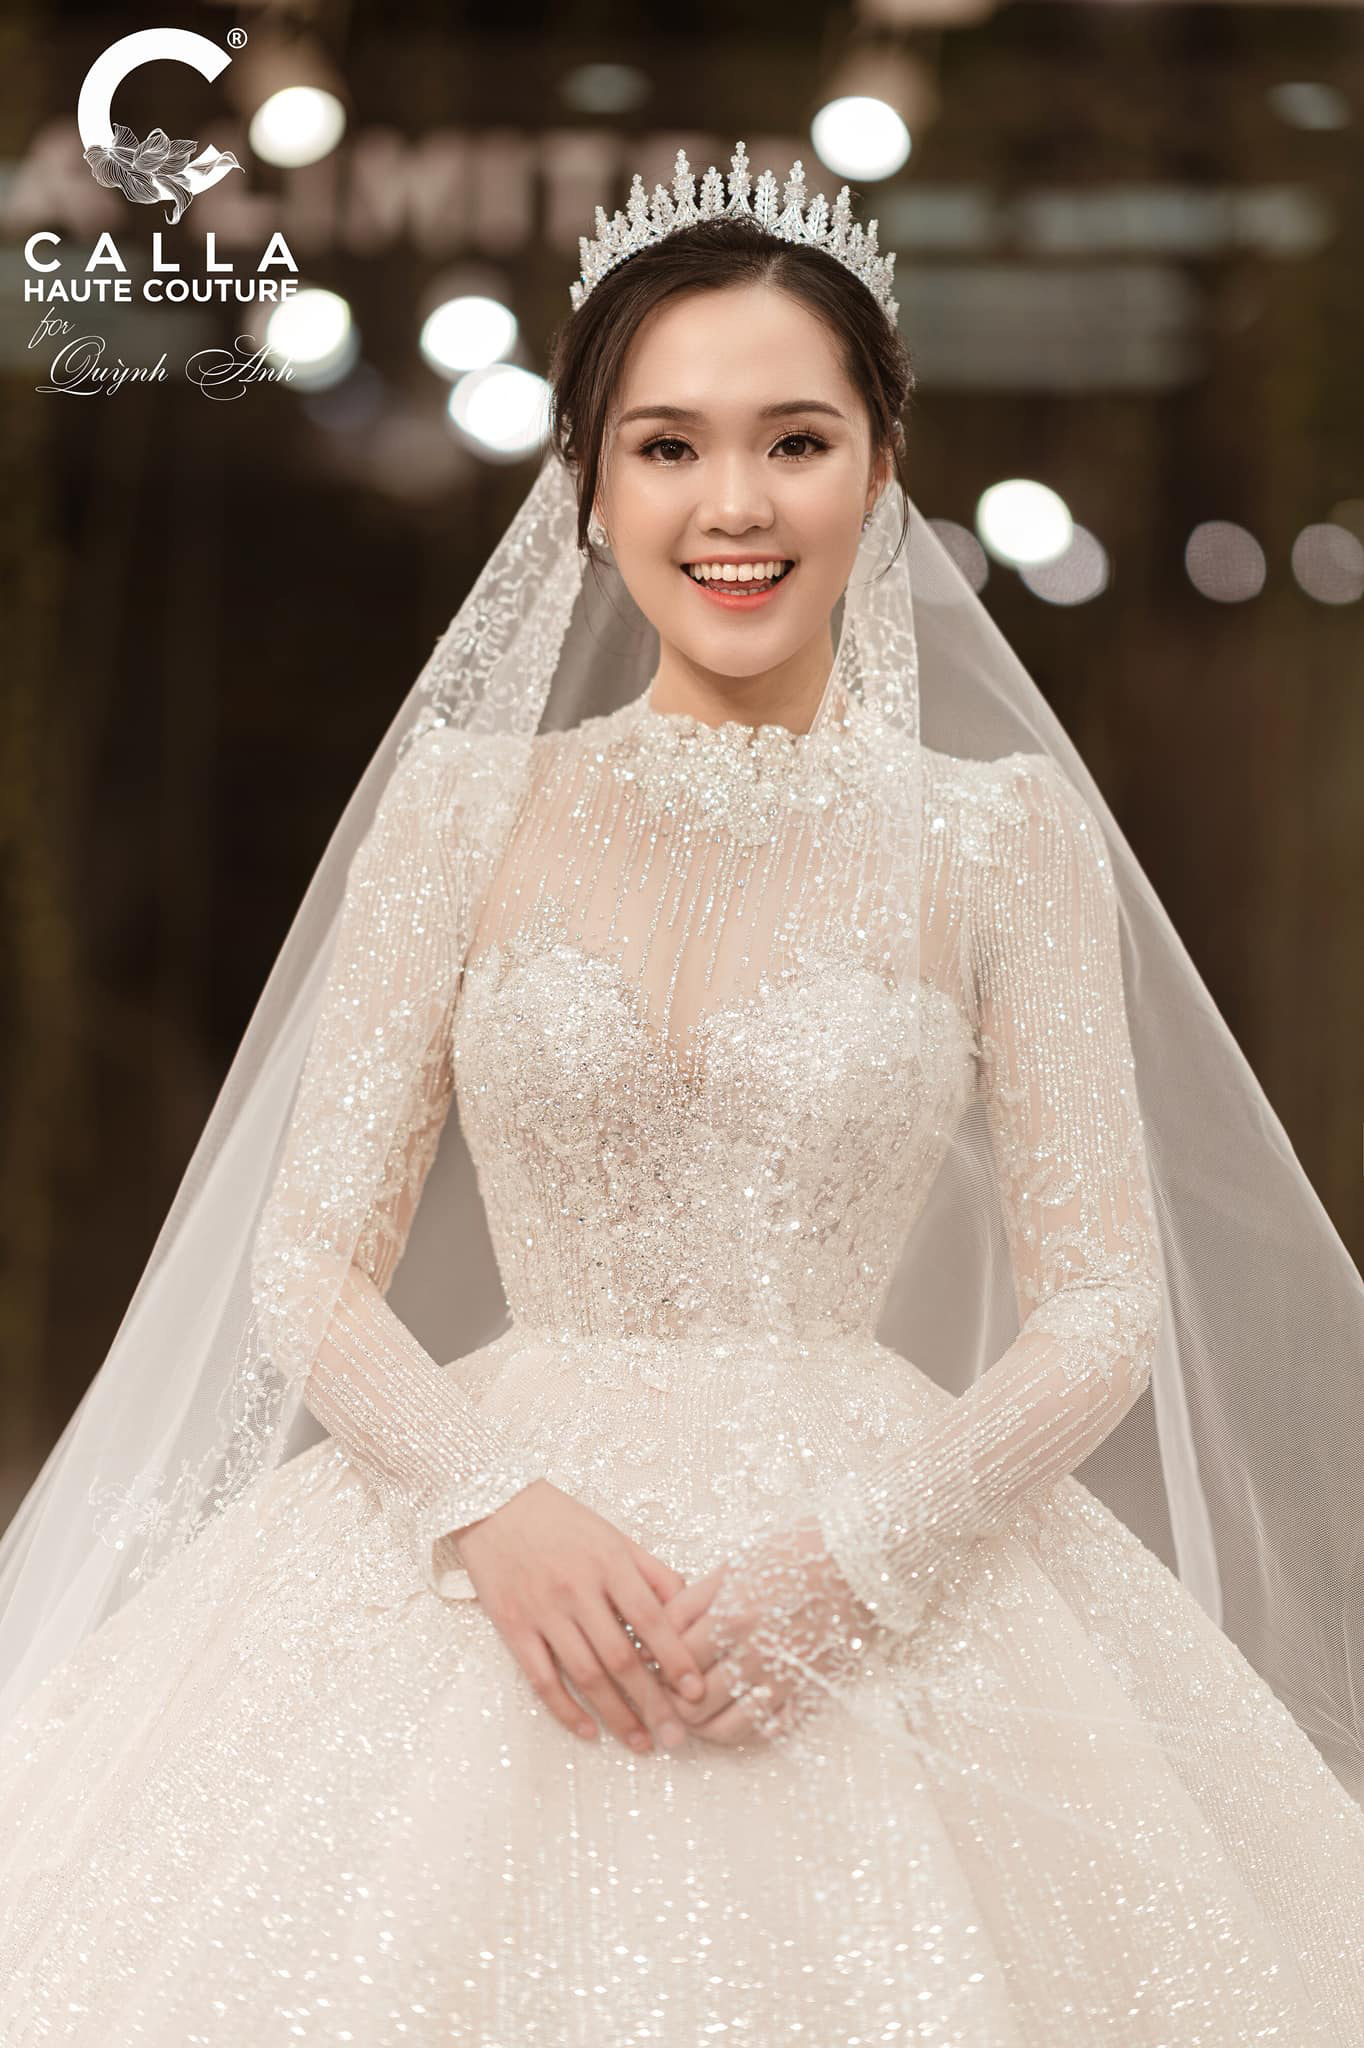 Vũ Ngọc Anh khóc khi thấy 'váy cưới trong mơ' - VnExpress Giải trí